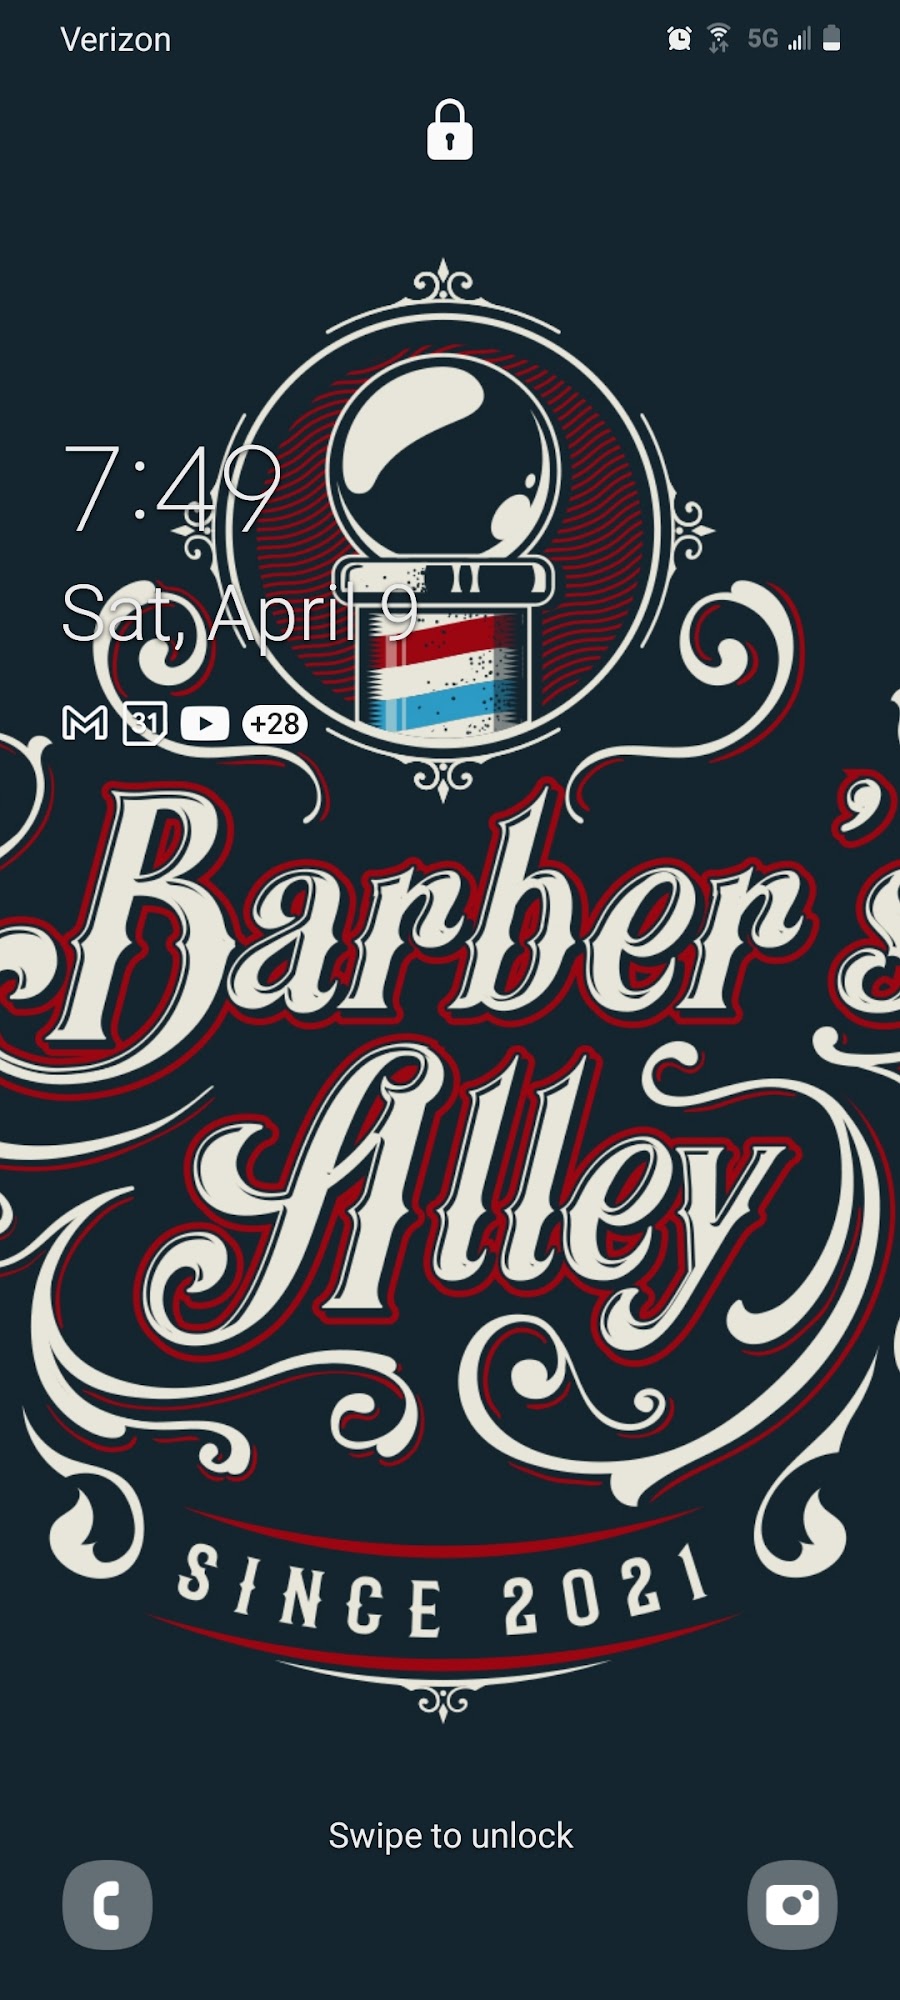 Barber's Alley 11022 Nicholas Ln STE 7, Ocean Pines Maryland 21811